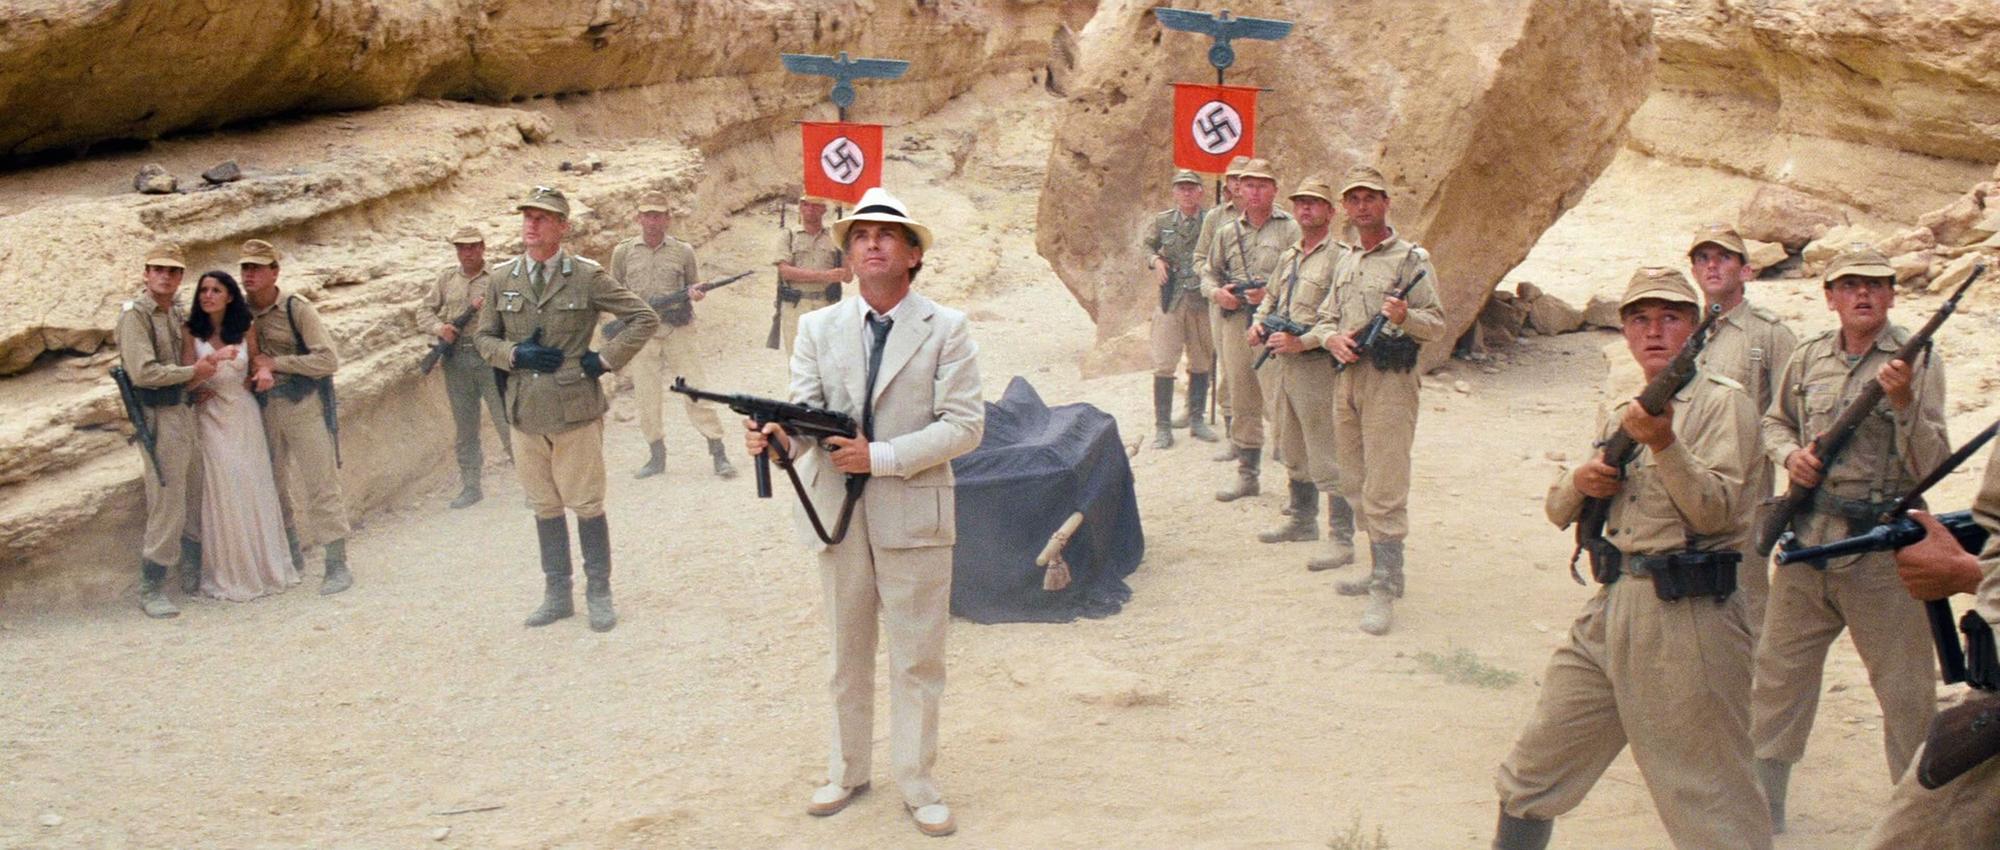 Les nazis cherchant à récupérer l'arche perdue dans Indiana Jones. [Paramount Pictures - Lucasfilm / - / Collection ChristopheL via AFP]